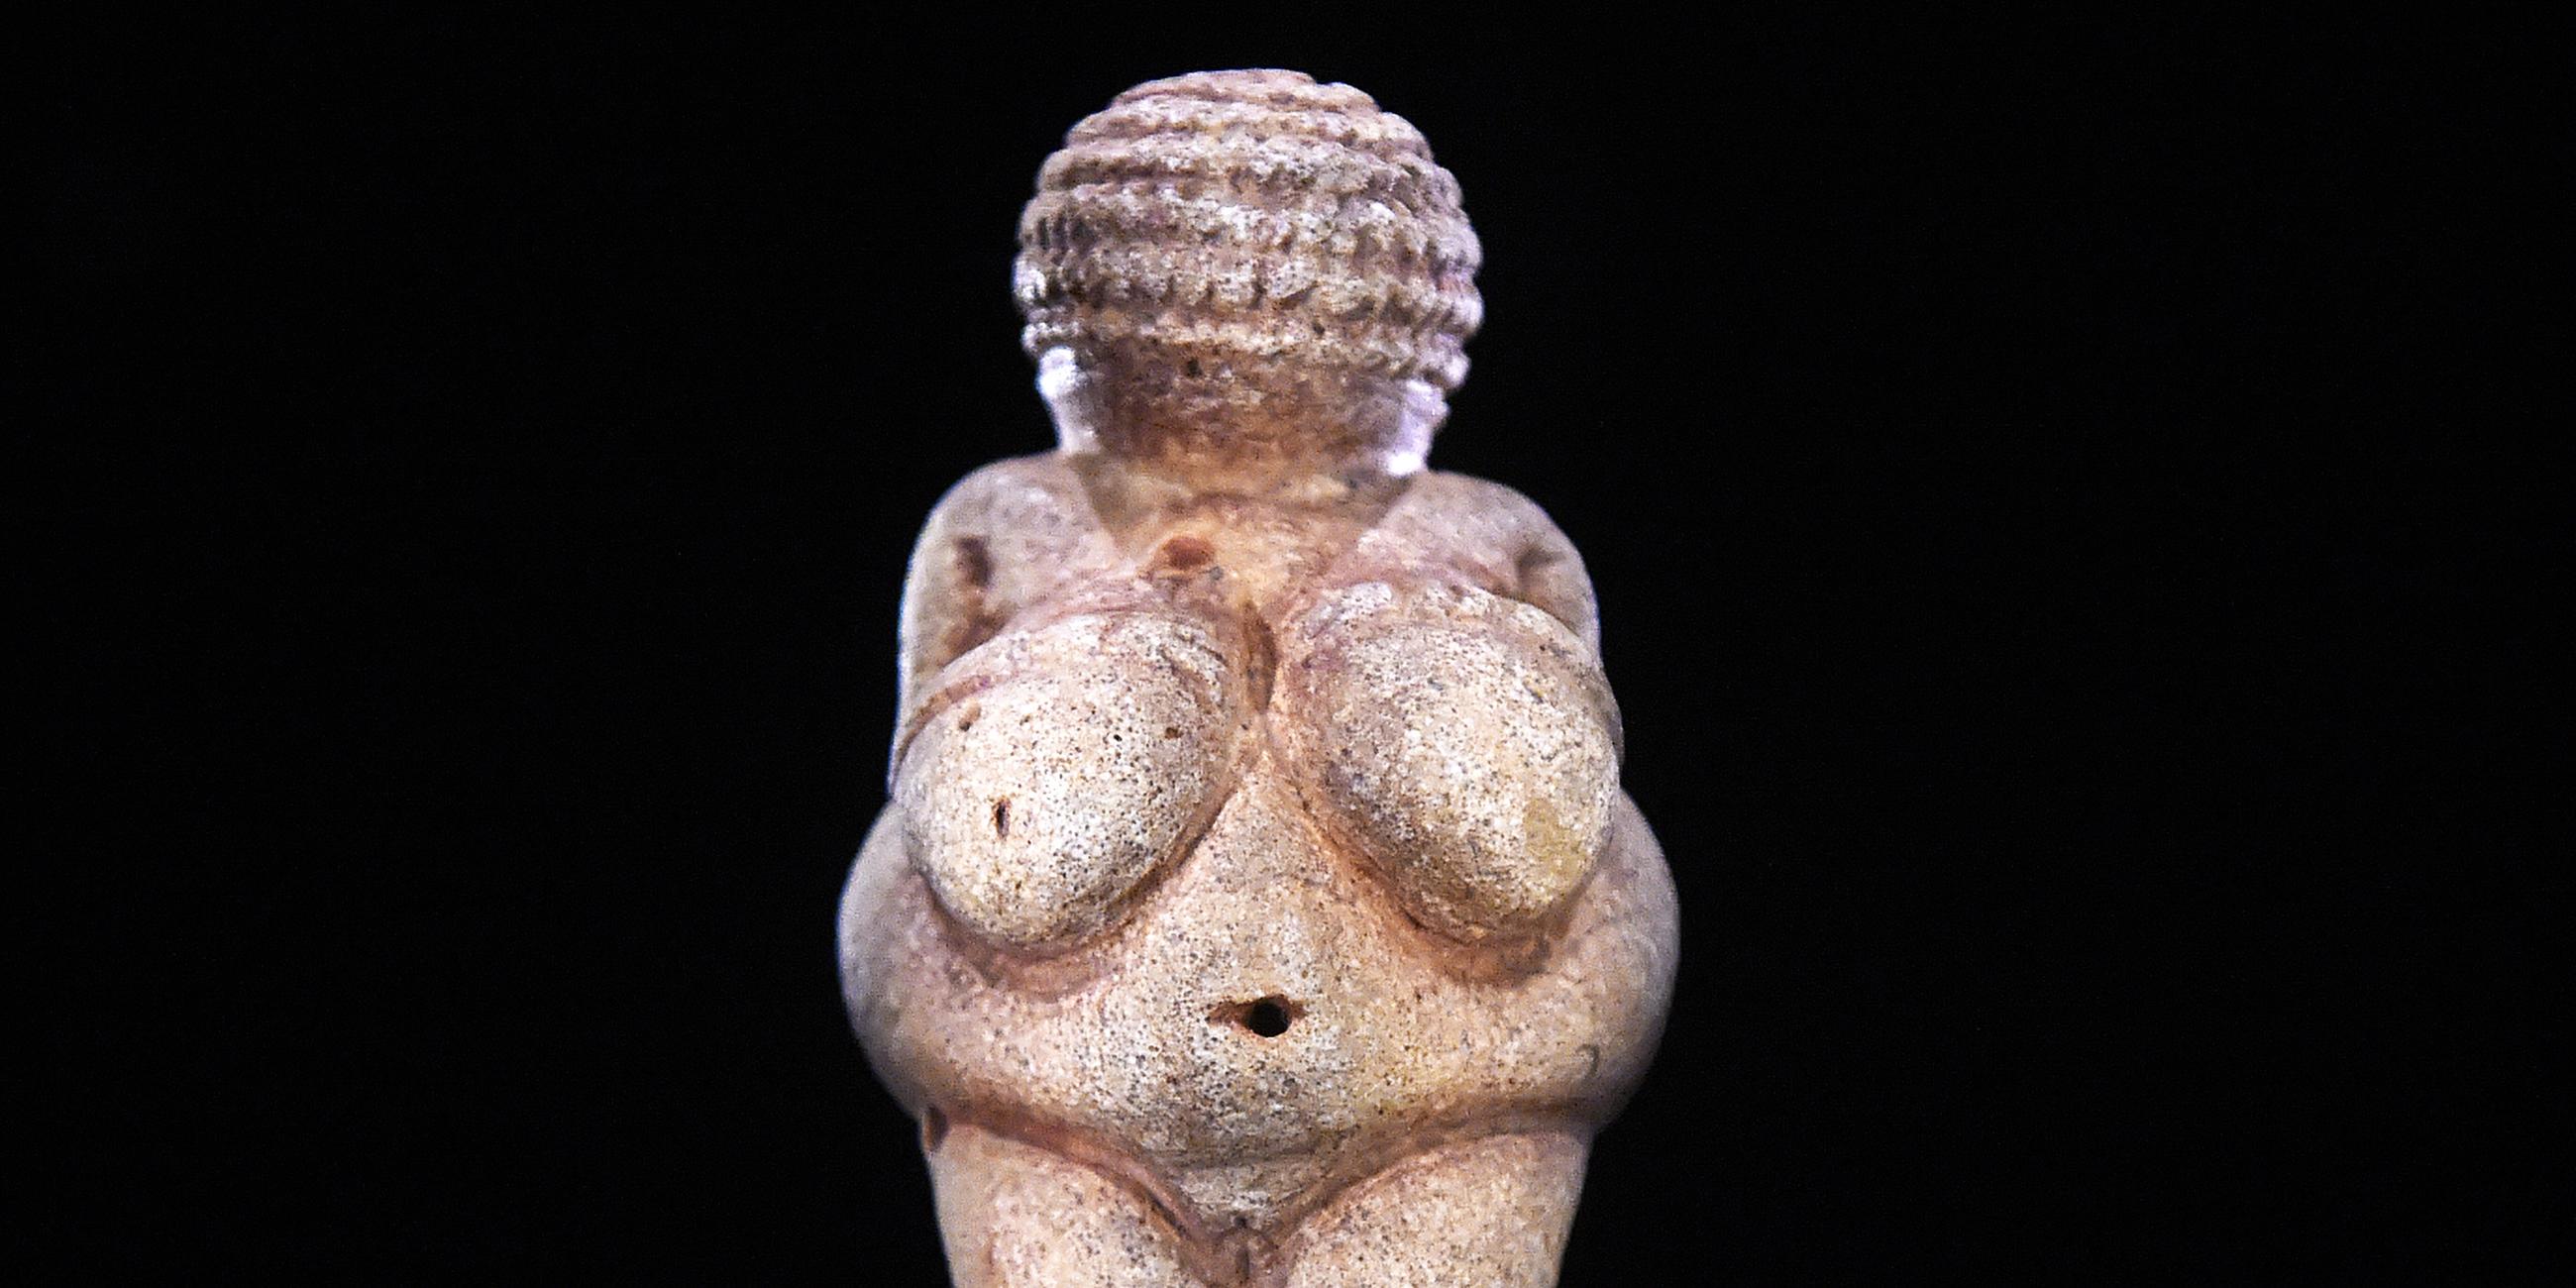 Archiv: Die Venus von Willendorf aufgenommen am  22. 09. 2015, im neuen Venuskabinett des Naturhistorischen Museums (NHM) in Wien. 